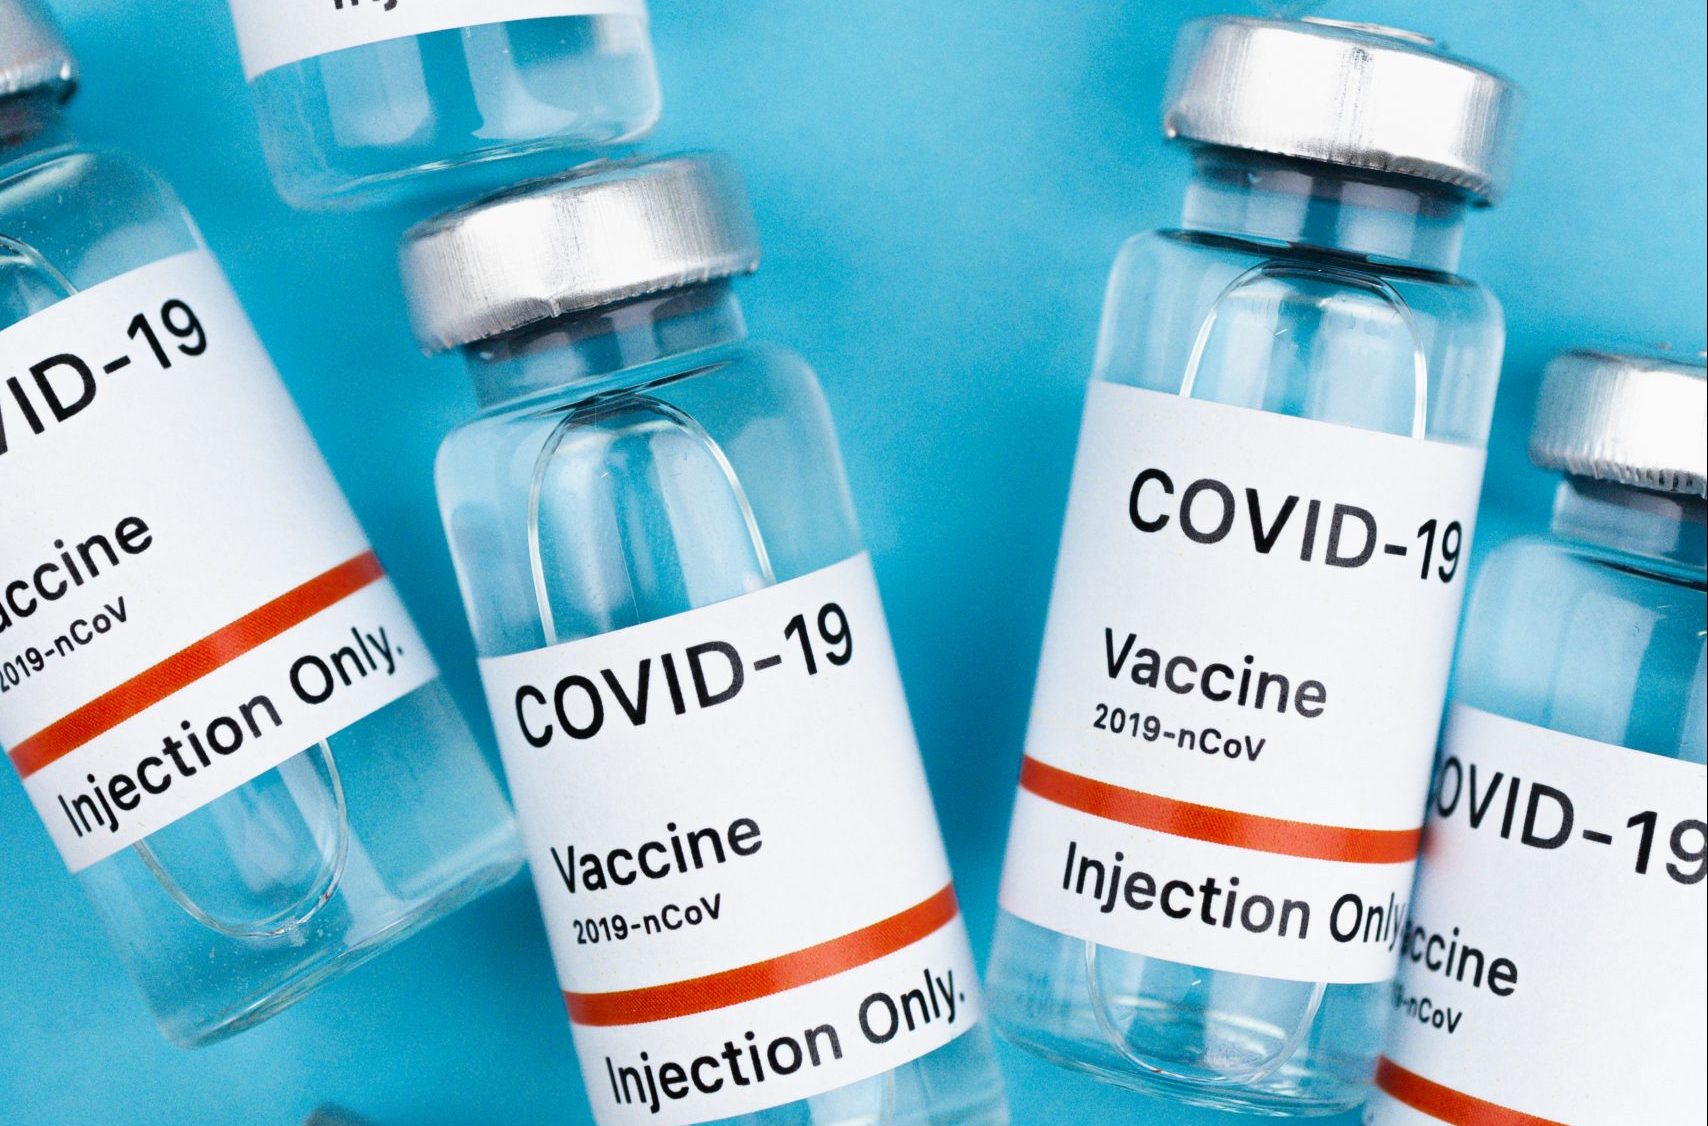 Agência reguladora dos EUA autoriza 3ª dose das vacinas Pfizer e Moderna para imunossuprimidos. Foto: Maksim Goncharenok/Pexels